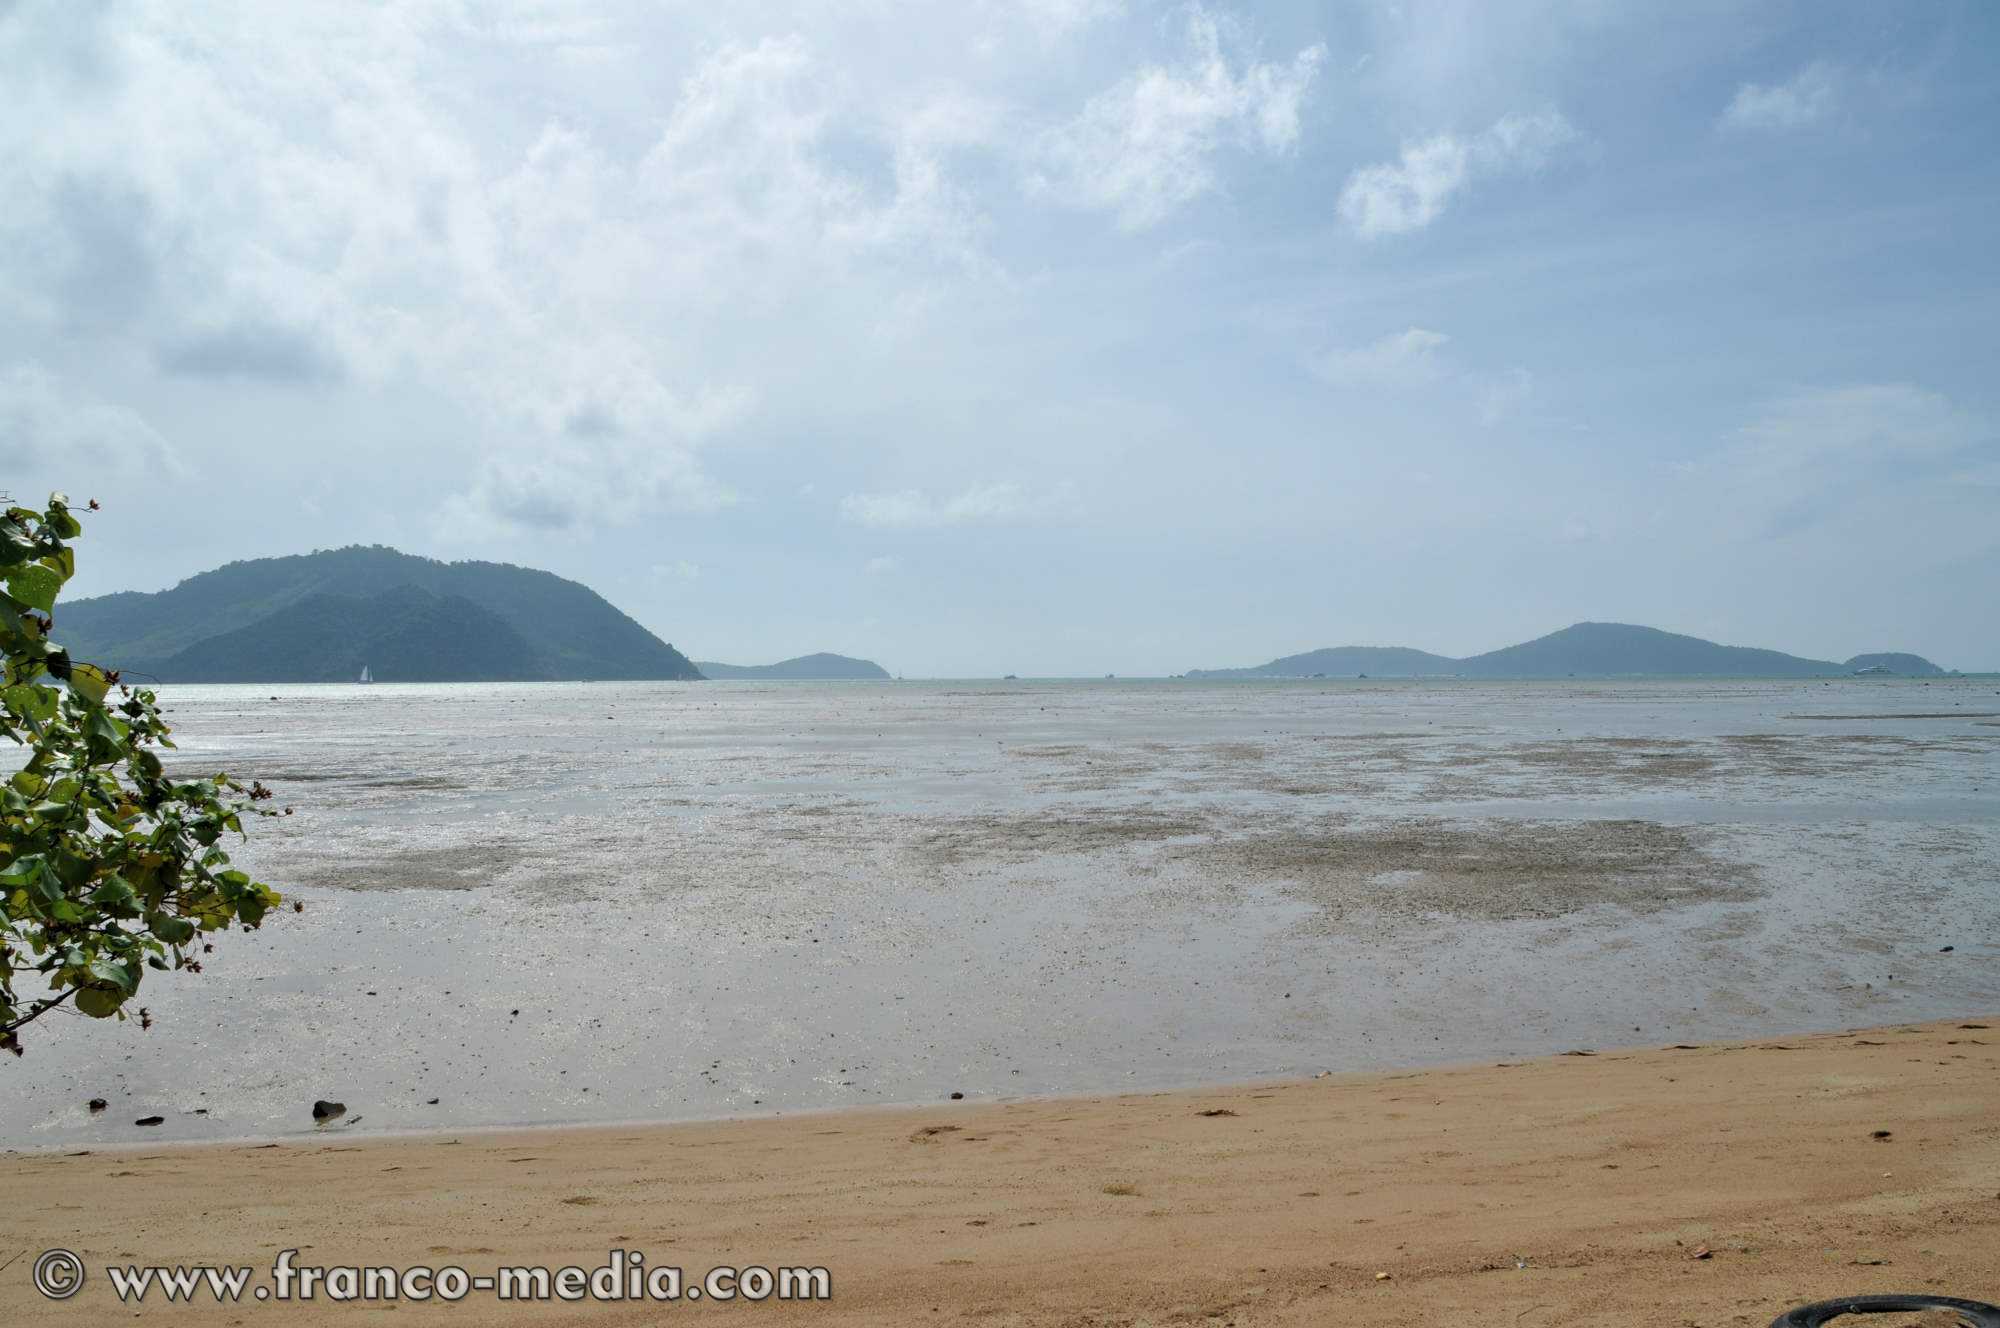 Egalement située sur la côte est de Phuket, la plage de Friendship Beach ne correspond certainement pas au rêve du vacancier moyen. Pourtant elle offre une vue superbe sur la Baie de Chalong et les îles qui la parsèment. Cependant, ses eaux ne sont pas très ...